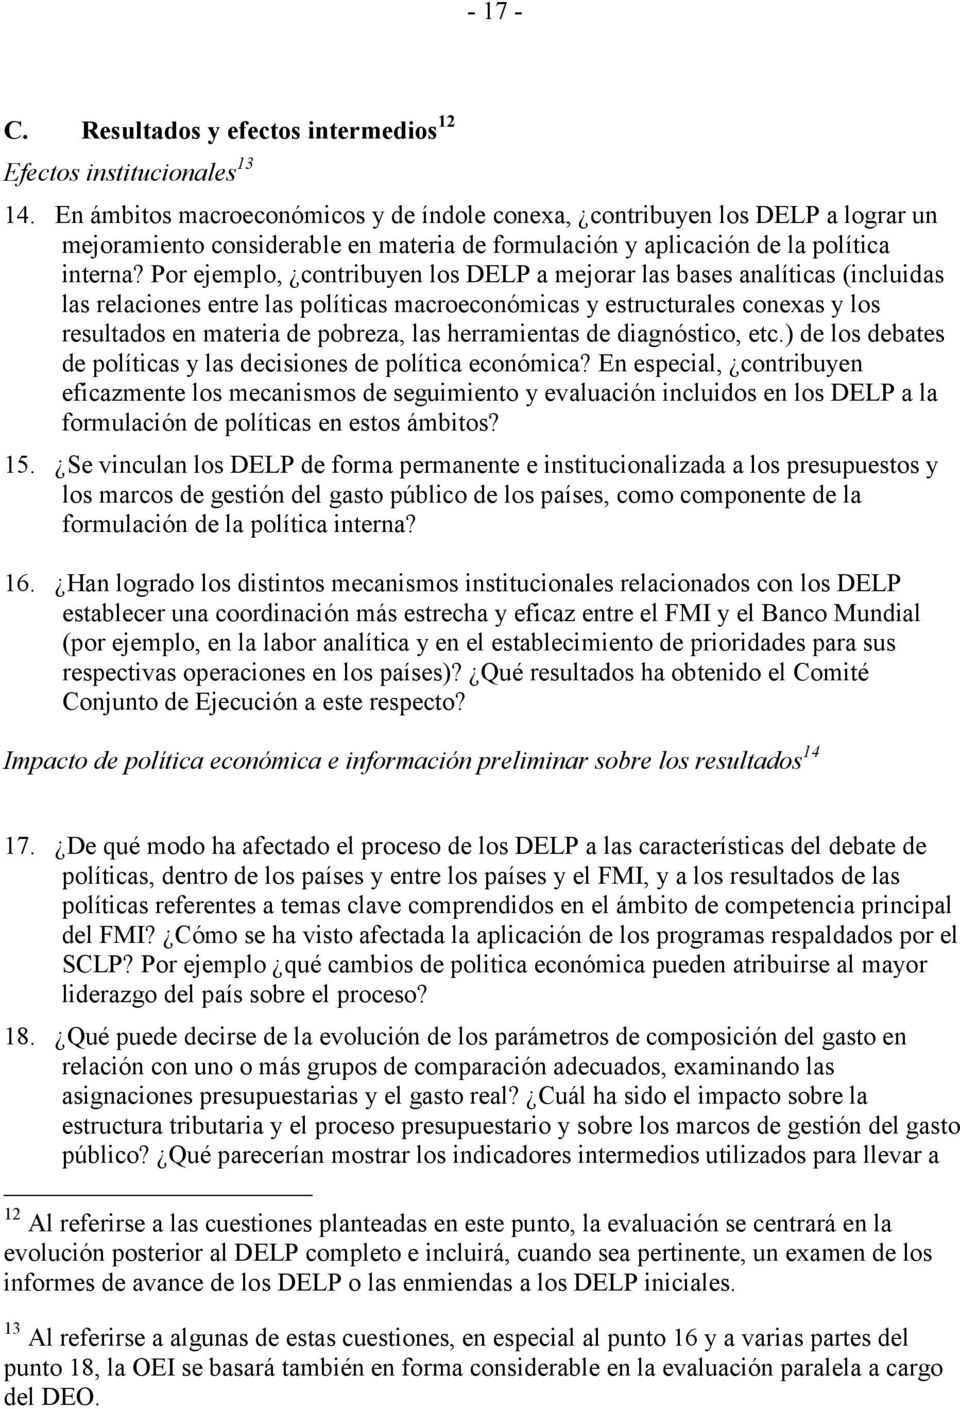 Por ejemplo, contribuyen los DELP a mejorar las bases analíticas (incluidas las relaciones entre las políticas macroeconómicas y estructurales conexas y los resultados en materia de pobreza, las